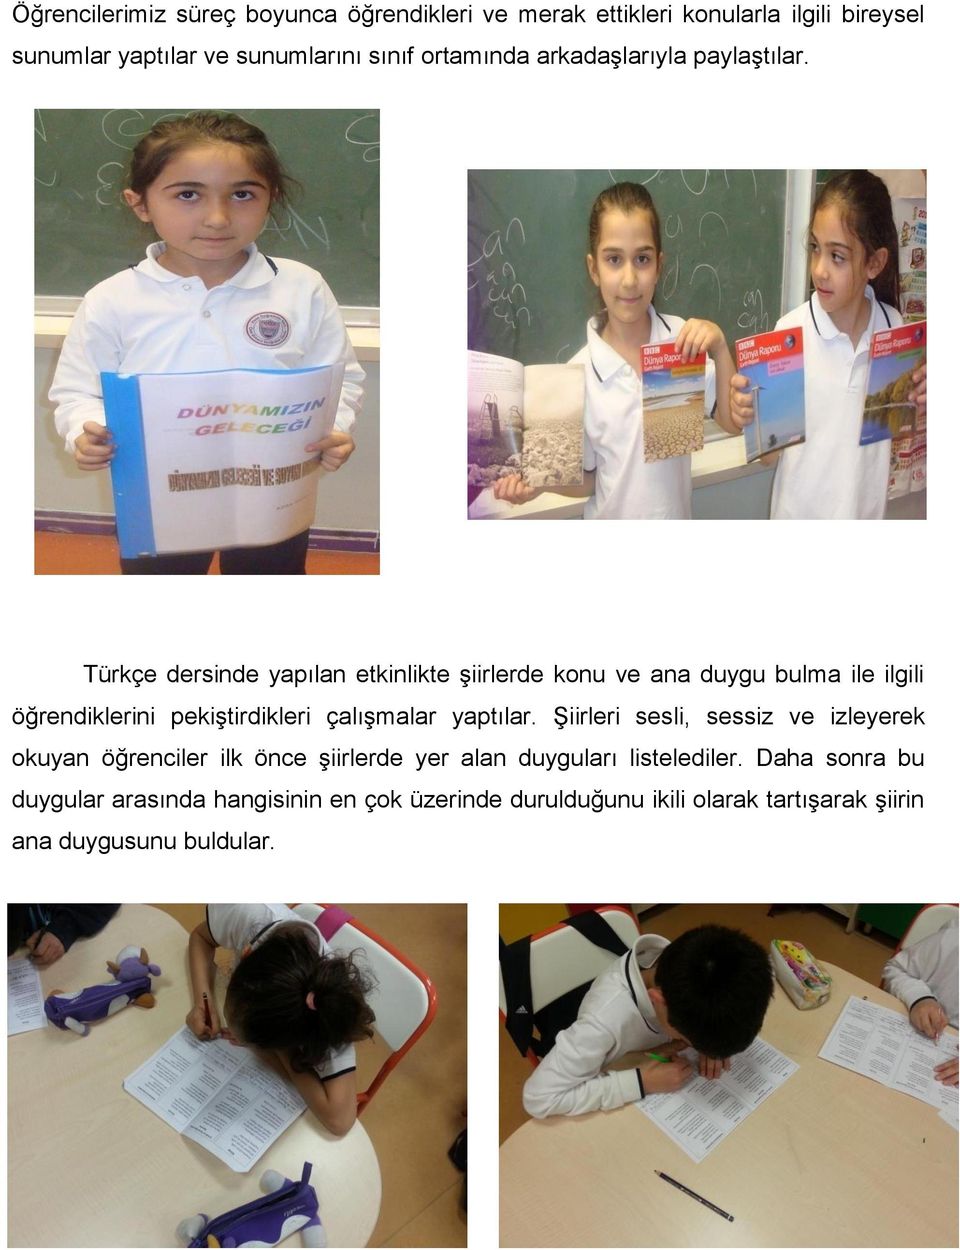 Türkçe dersinde yapılan etkinlikte şiirlerde konu ve ana duygu bulma ile ilgili öğrendiklerini pekiştirdikleri çalışmalar yaptılar.